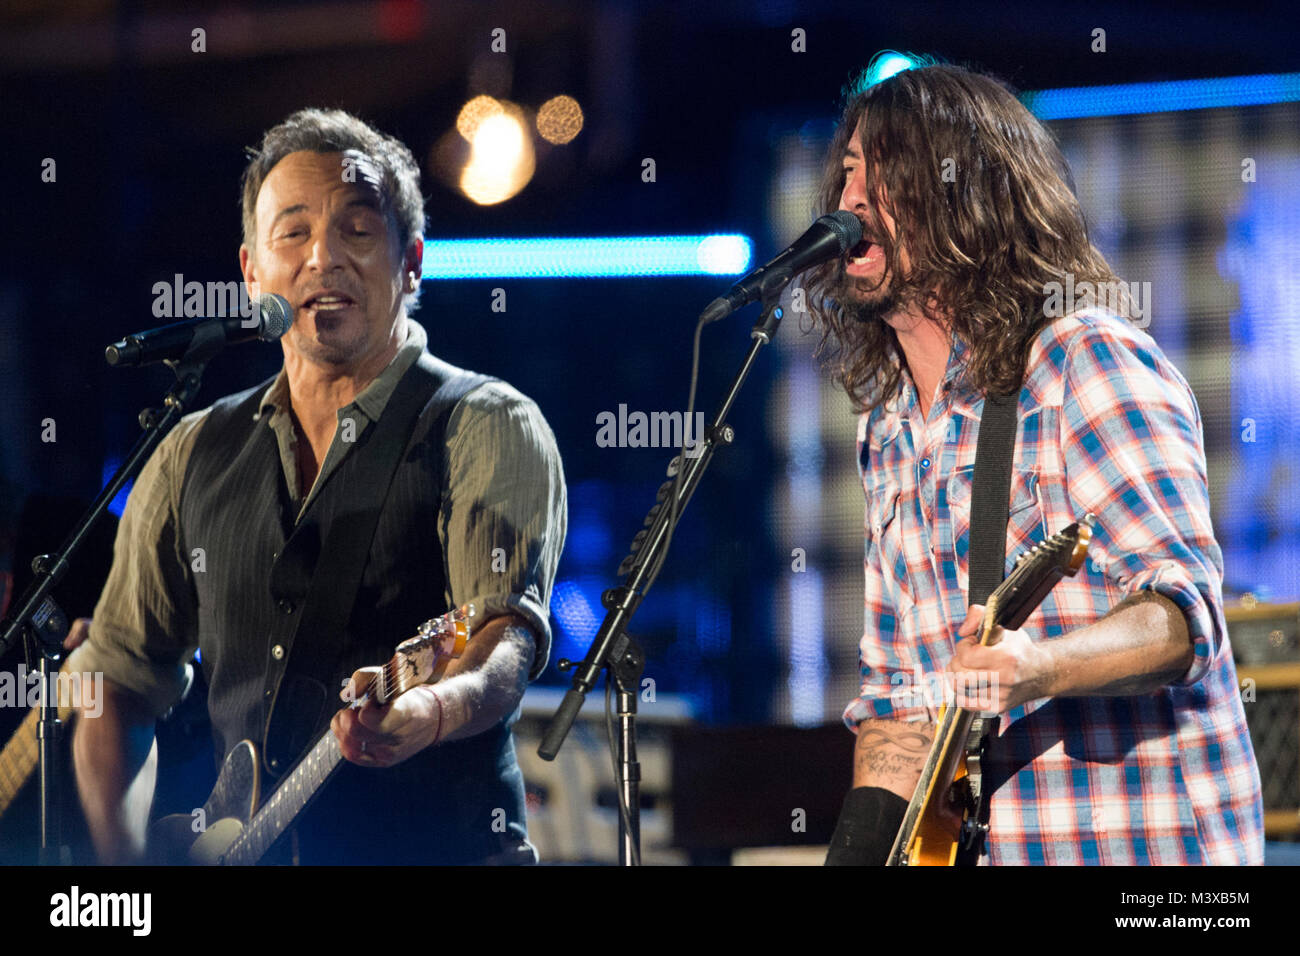 Bruce Springsteen und Dave Grohl spielen Creedence Clearwater Revival's Hit von 1969 "Fortunate Son" während des Konzerts für Valor in Washington, D.C., Nov. 11, 2014. DoD Nachrichten Foto durch EJ Hersom 141111 - D-DB 155-034 von DoD News Fotos Stockfoto